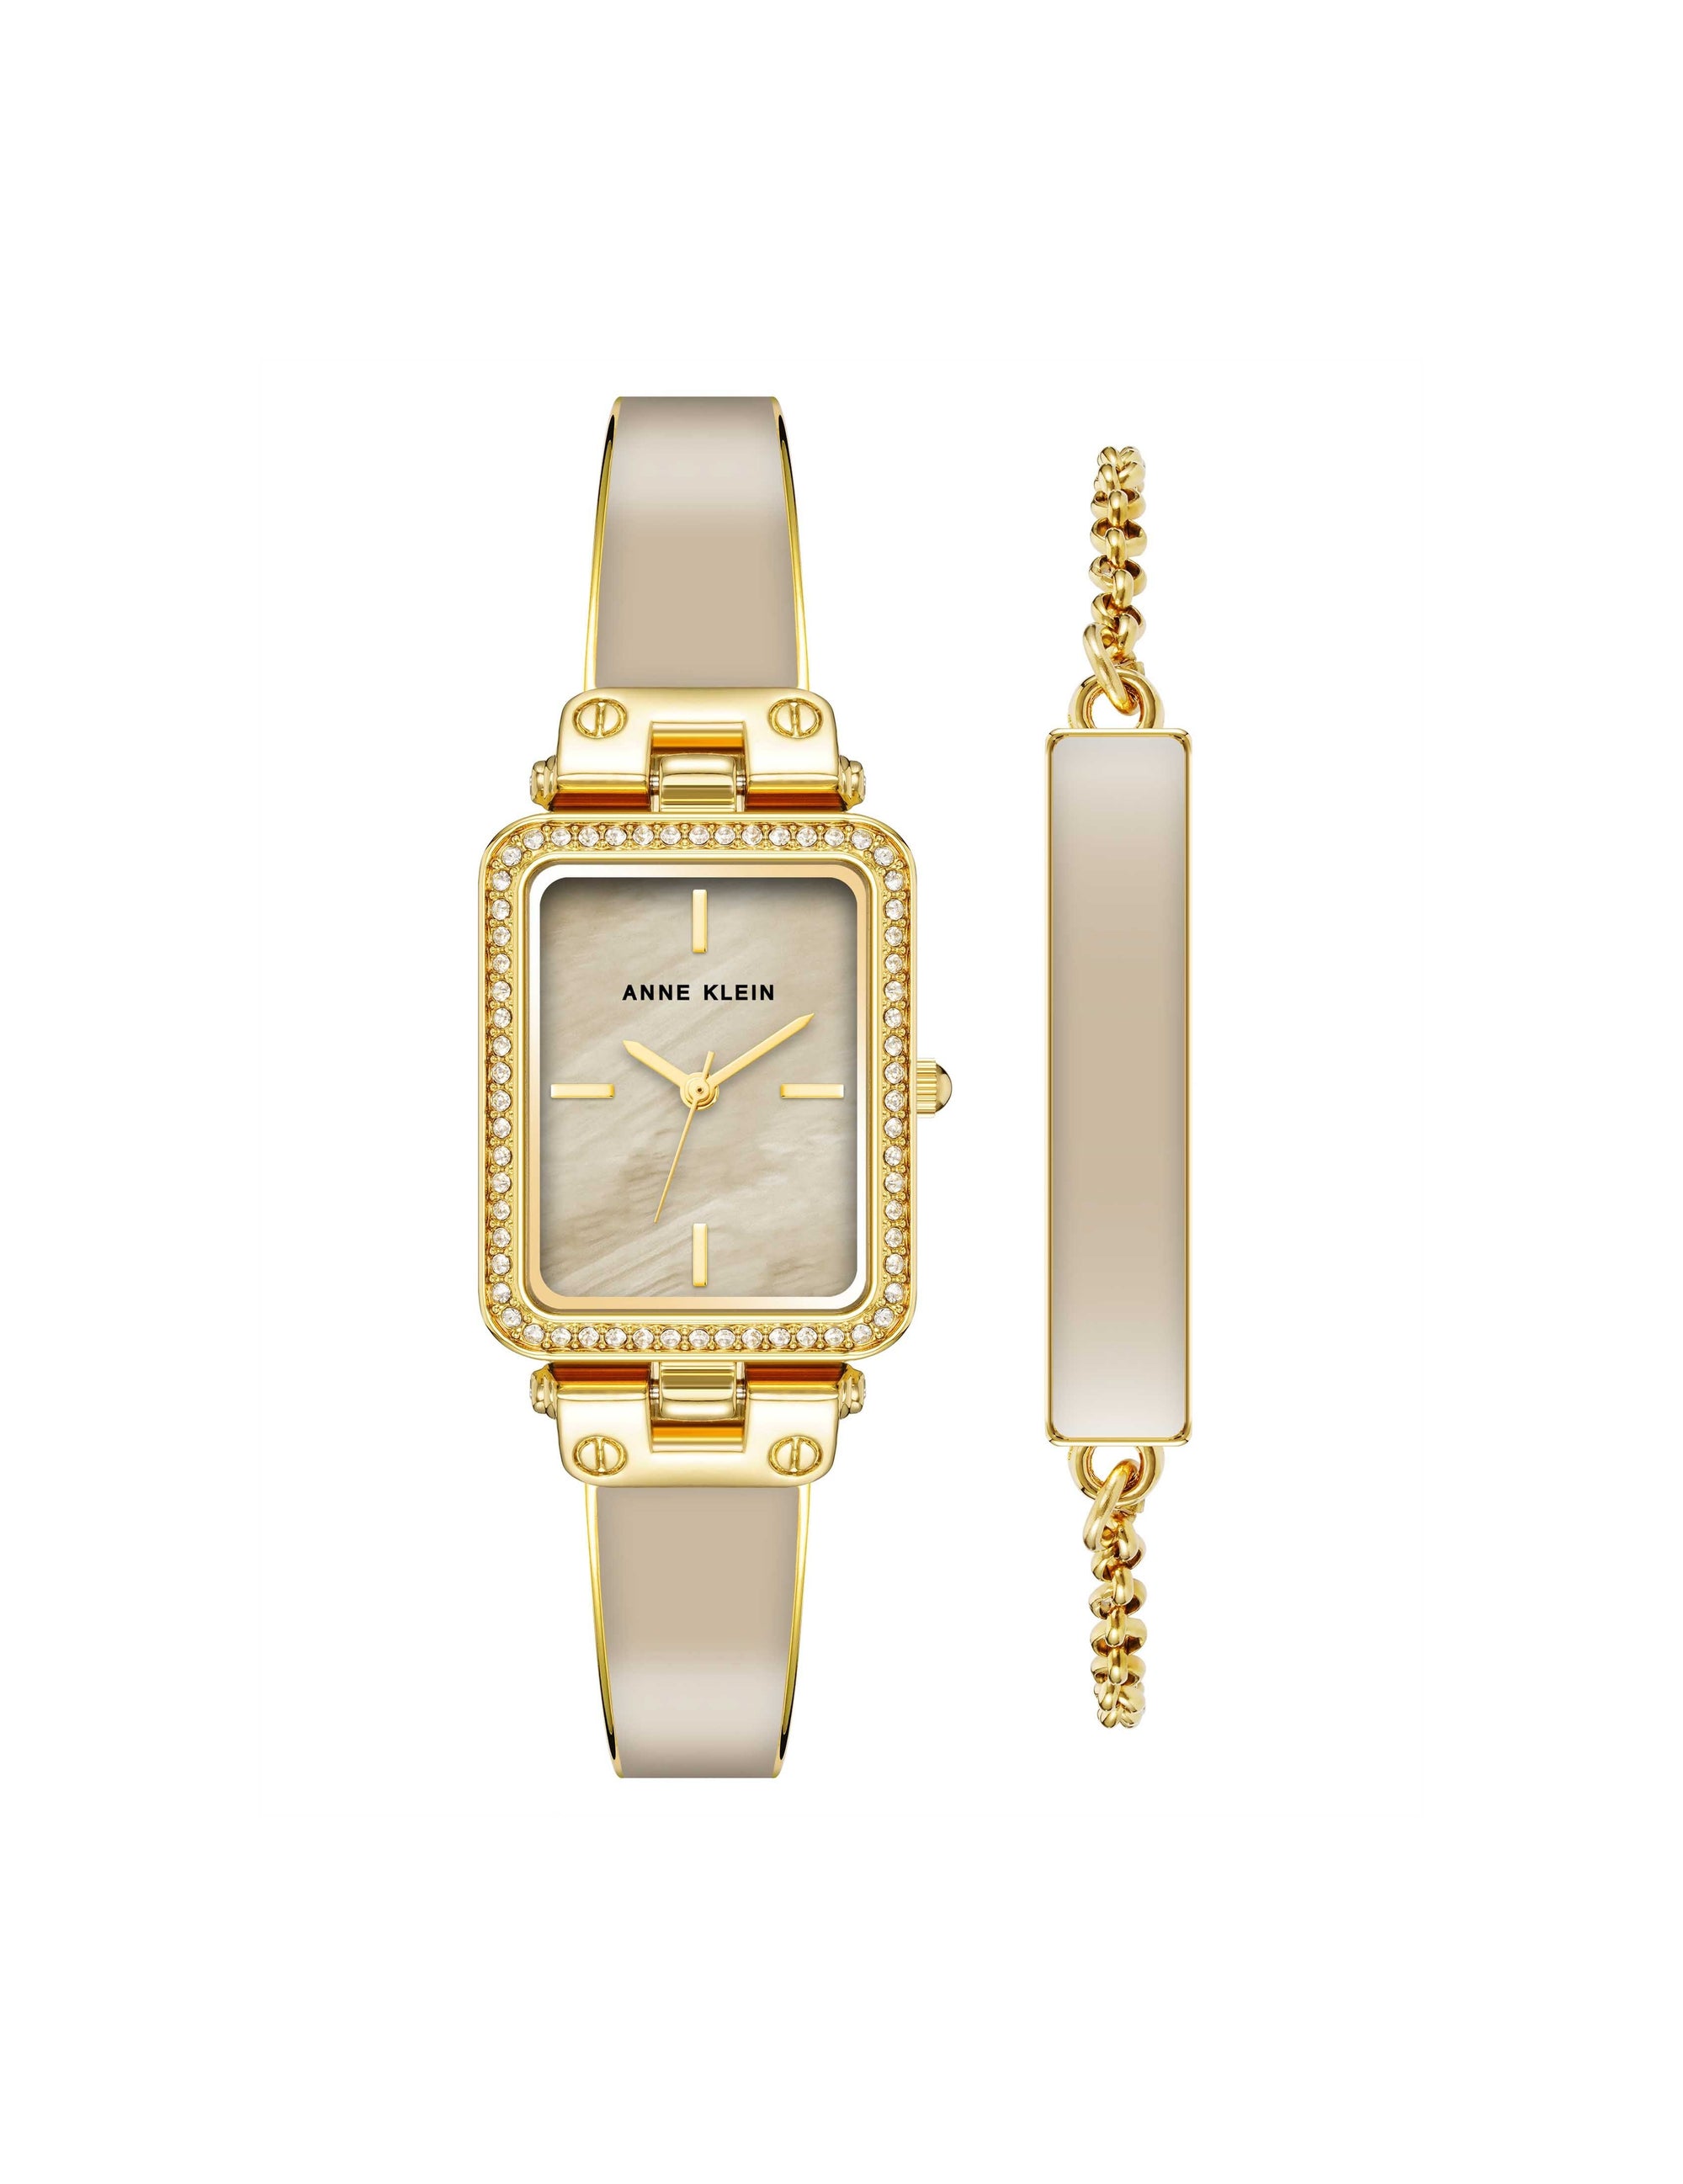 Anne Klein Women's Premium Crystal Accented Bracelet Watch AK/2928 | eBay